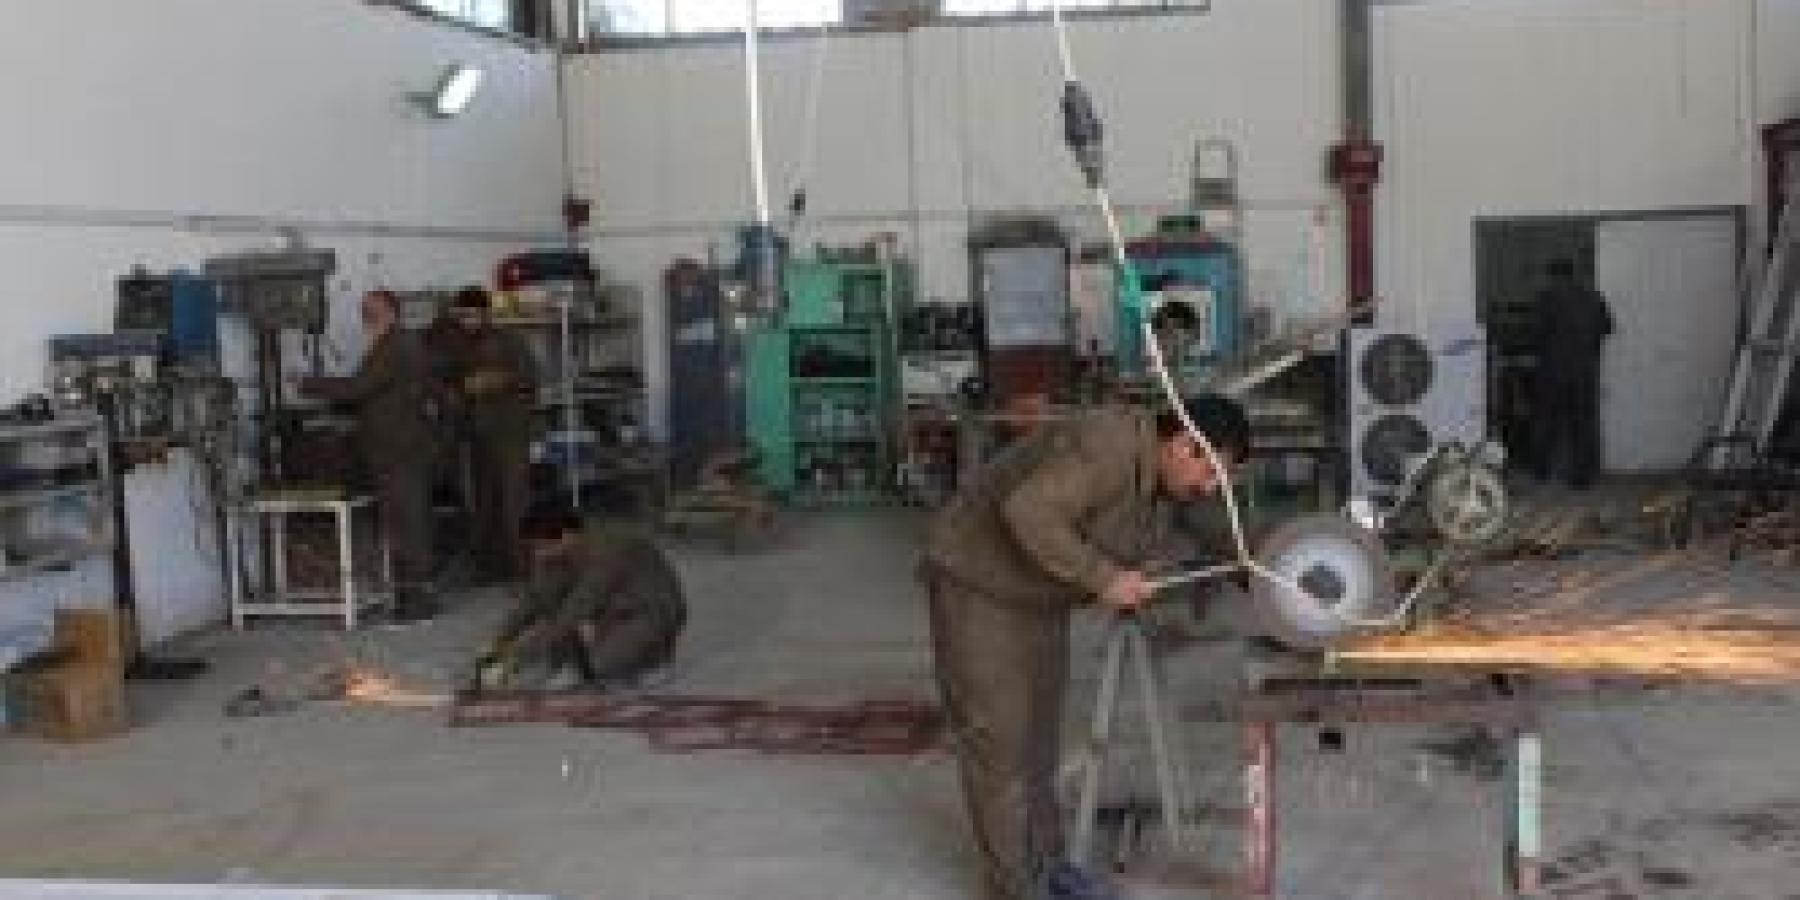 قسم الصيانة في العتبة العلوية المقدسة ينجز ورشة خاصة بصيانة المواد المصنوعة من مادة ال PVC